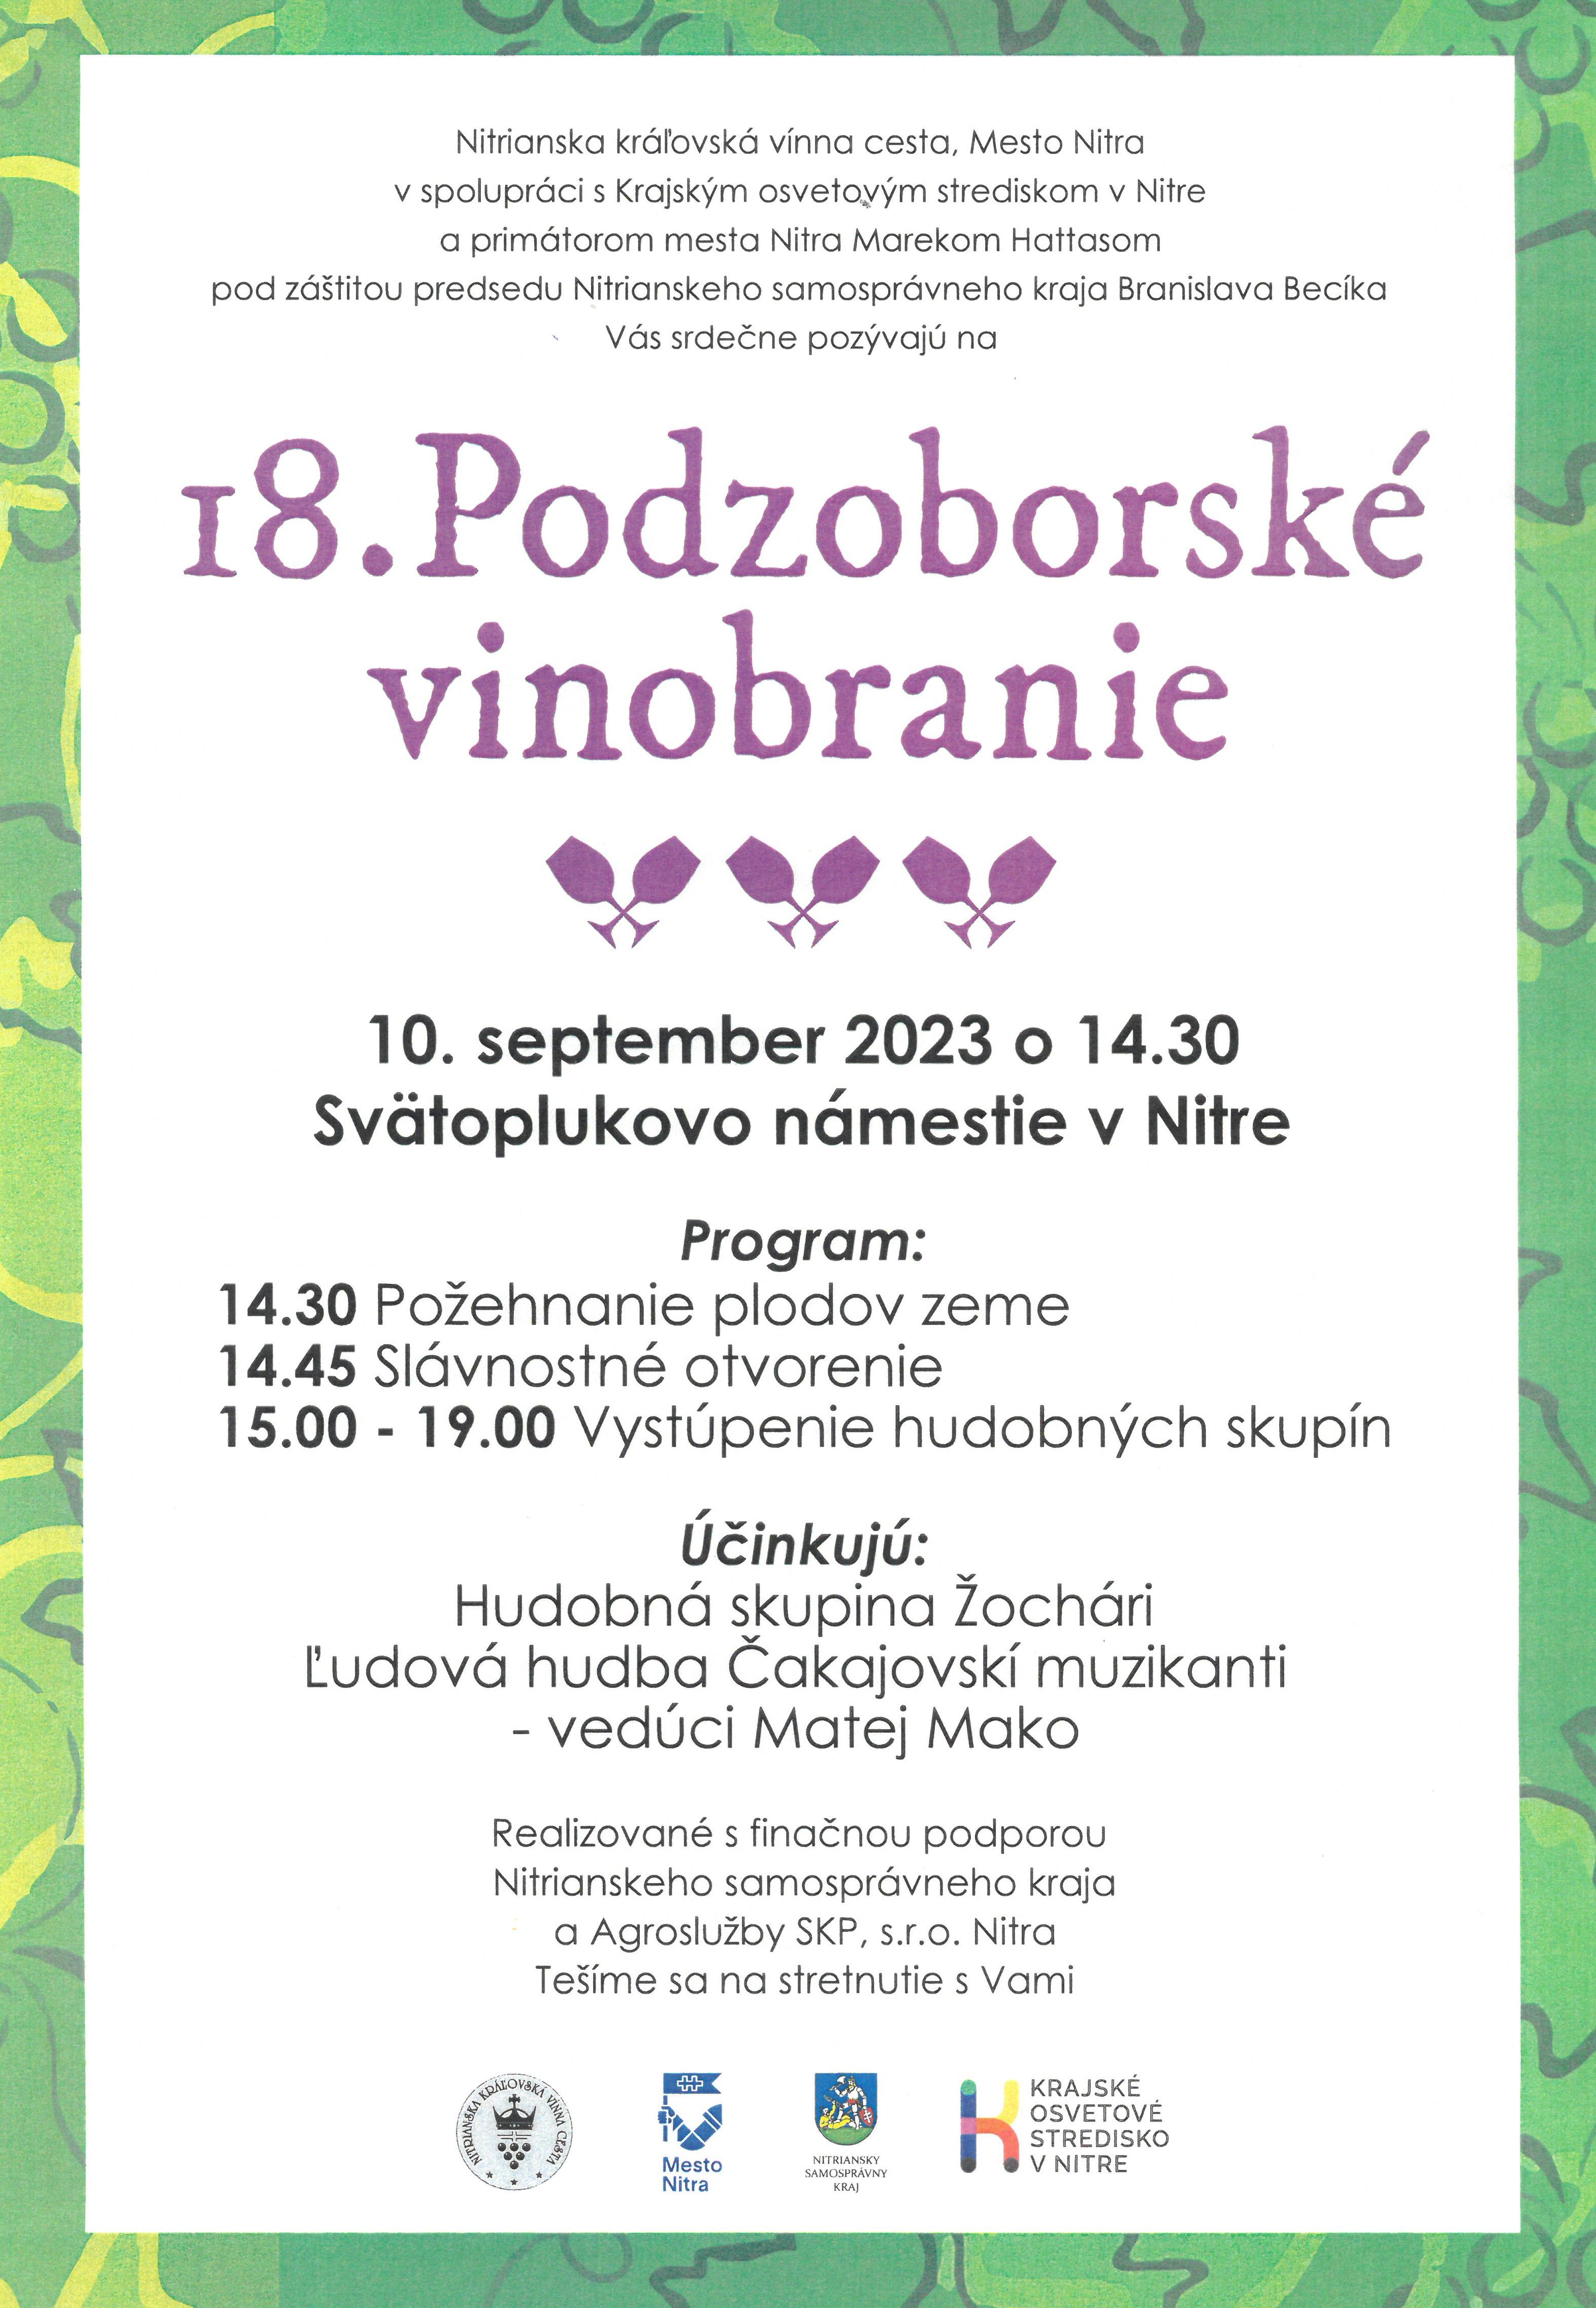 Podzoborsk vinobranie 2023 Nitra - 18. ronk